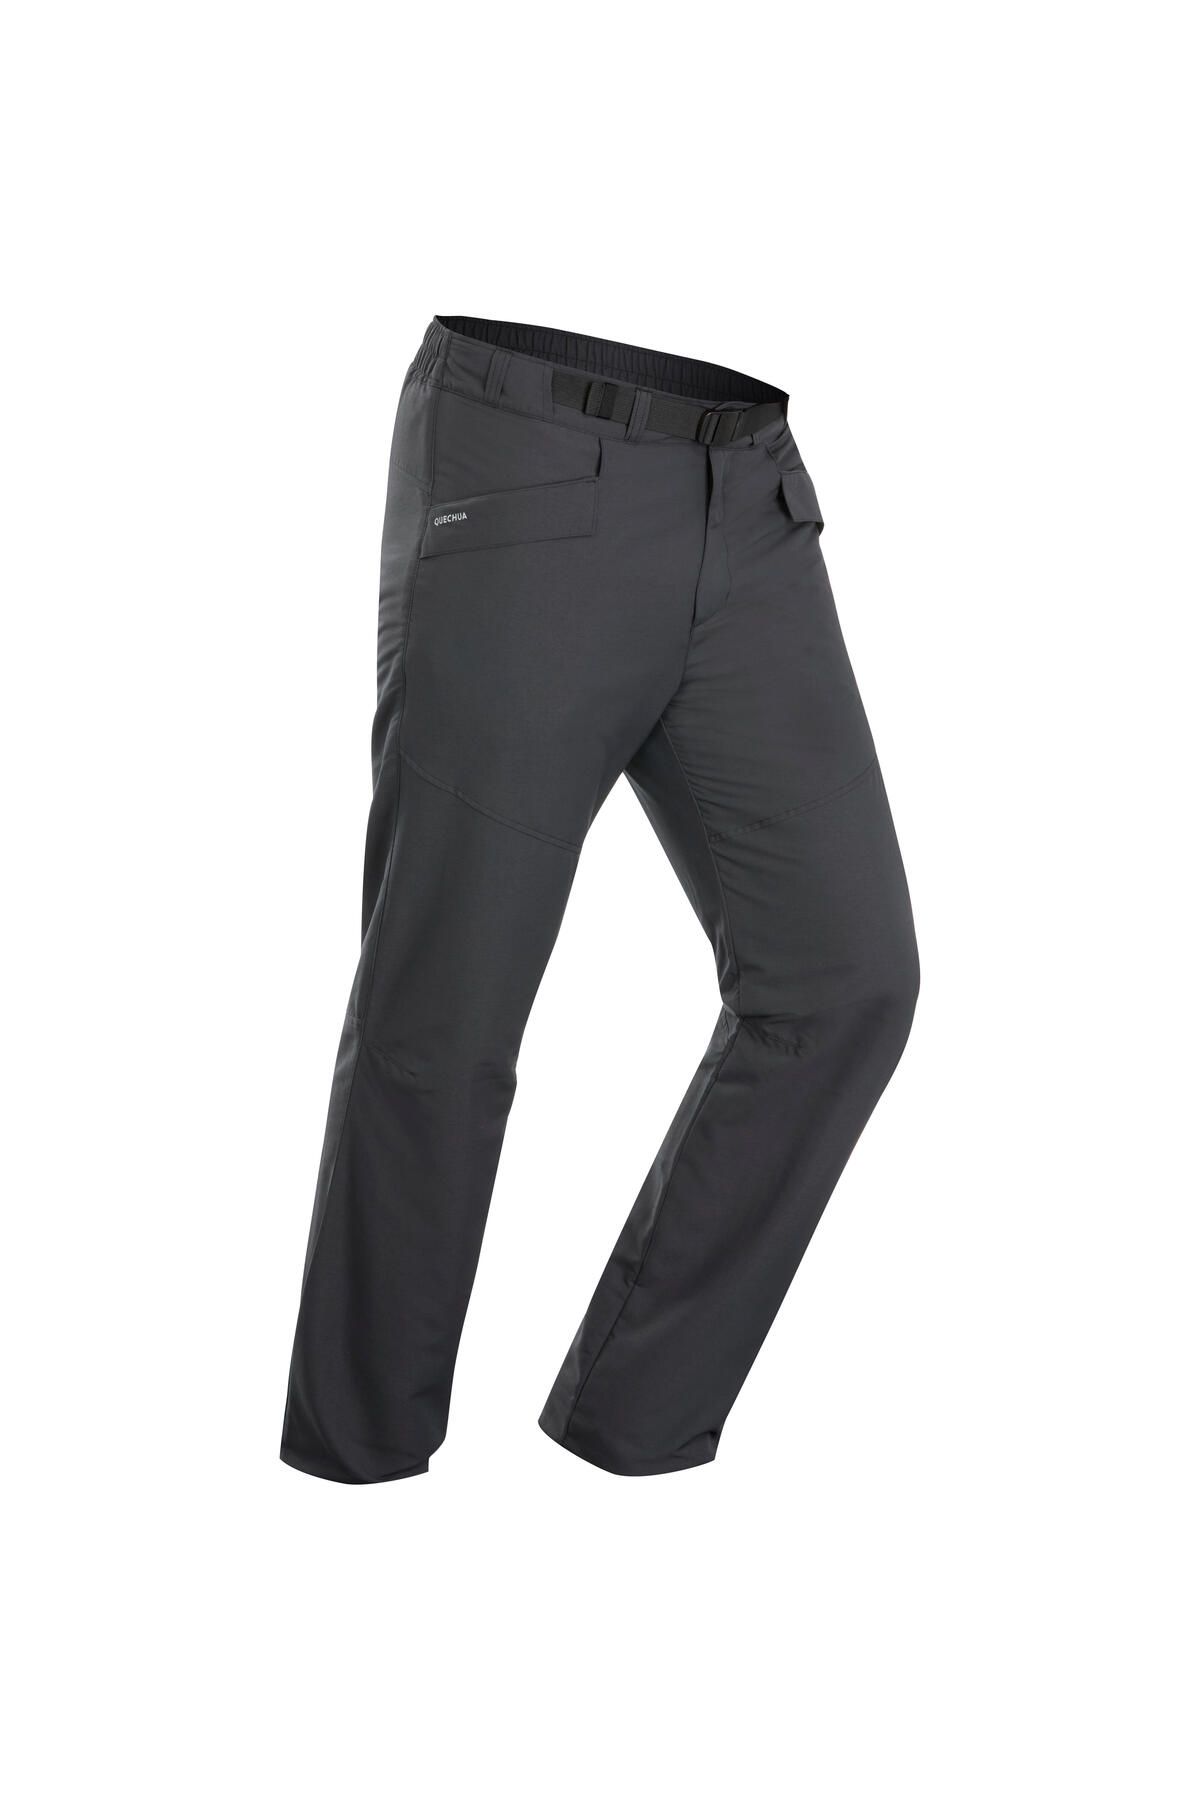 Decathlon Erkek Sıcak Tutan Outdoor Kar Pantolonu - Gri - SH100 - -18°C